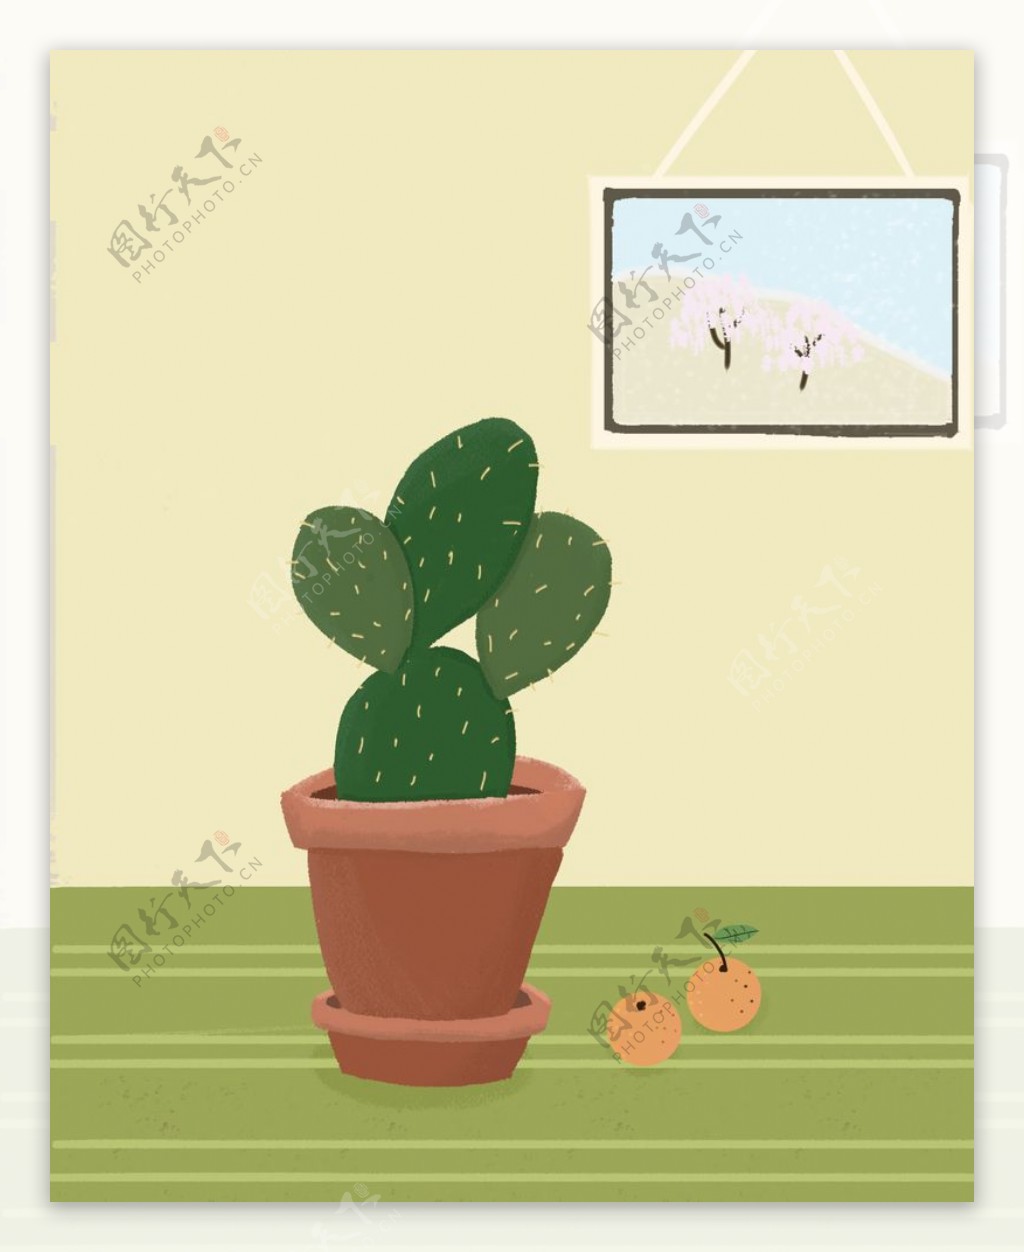 仙人掌植物插画图片